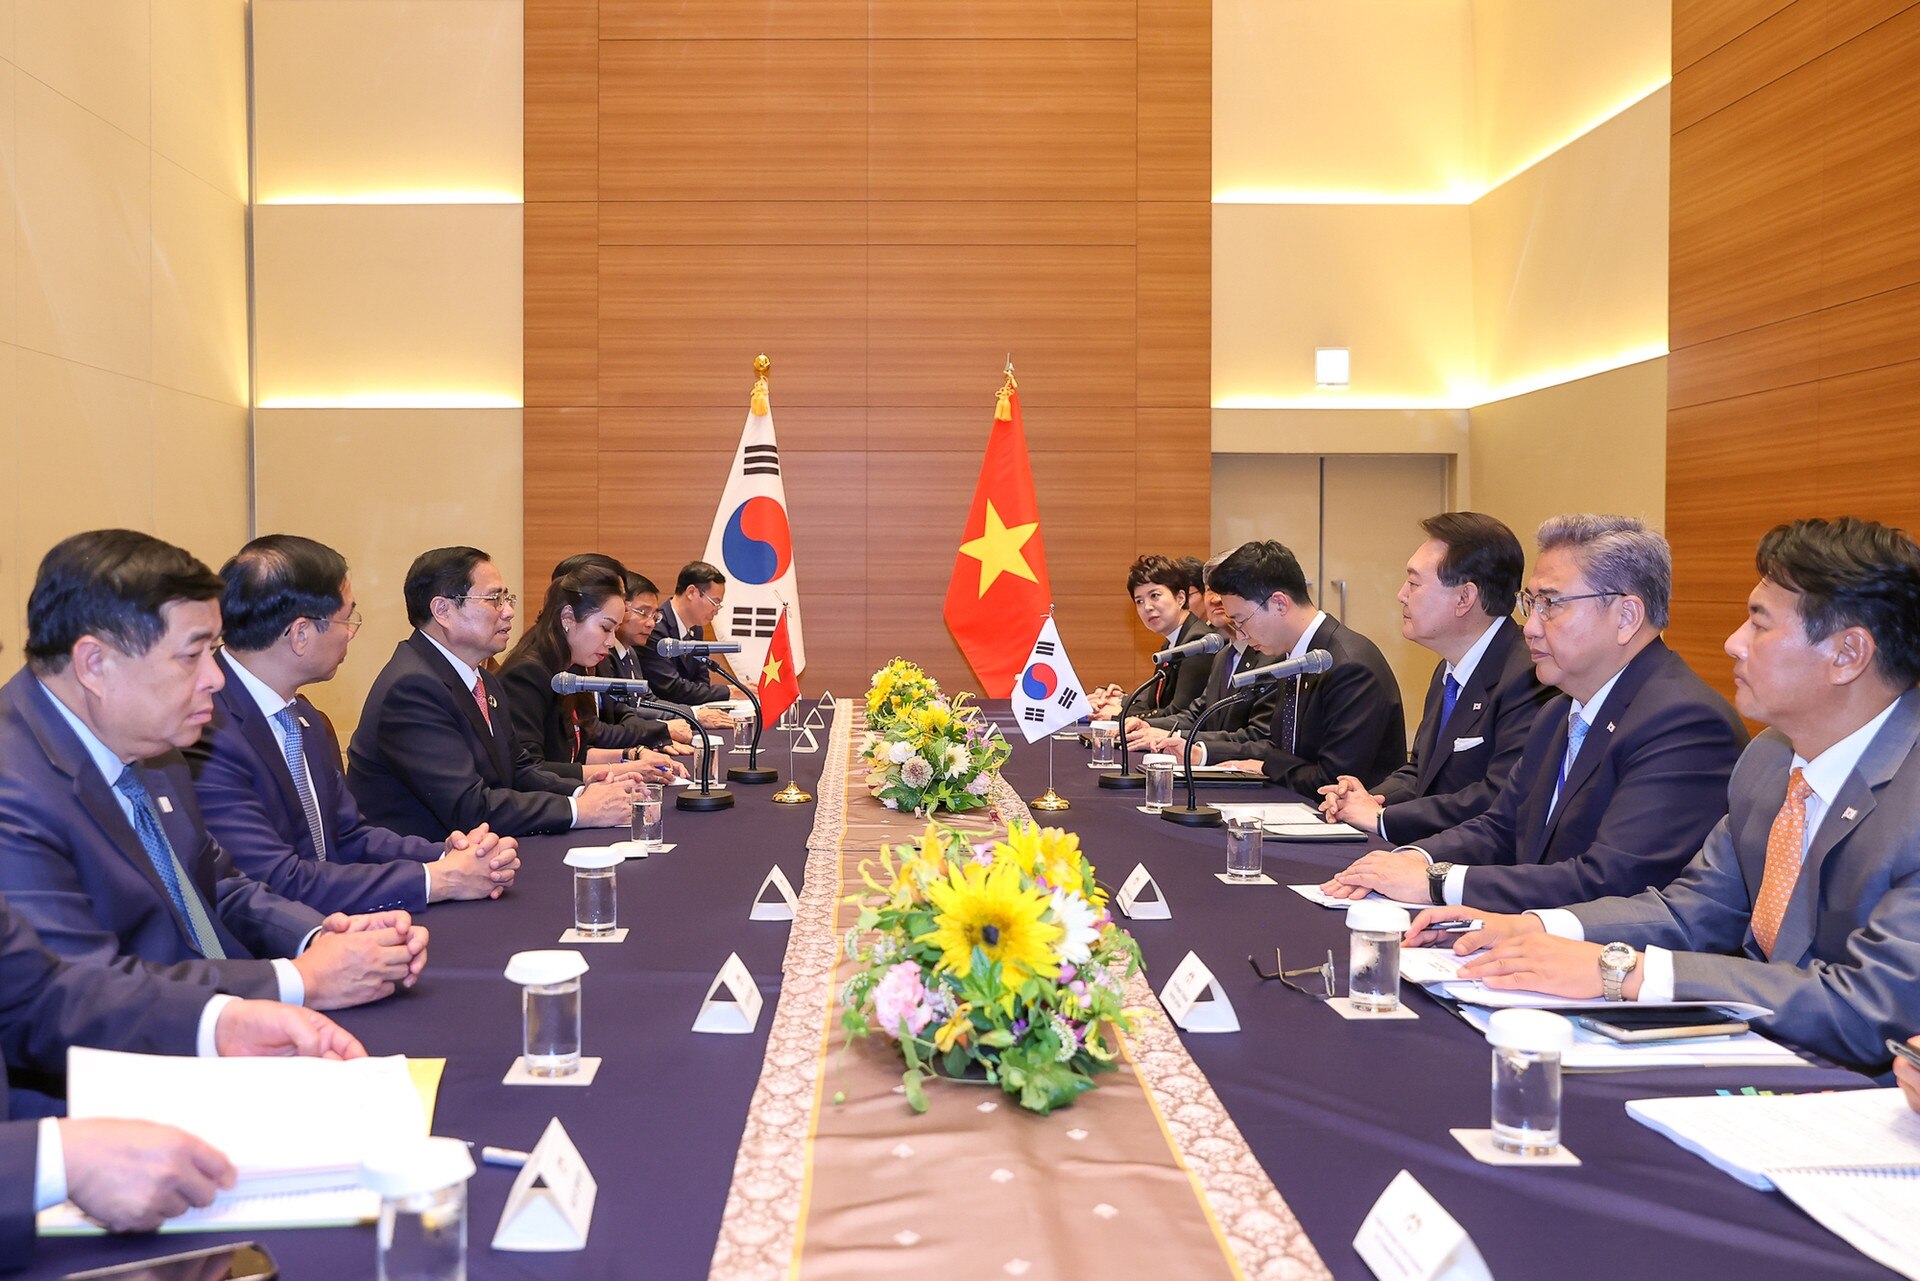 拡大G7サミットの機会に韓国大統領と会談するファム・ミン・チン首相 - 写真2。